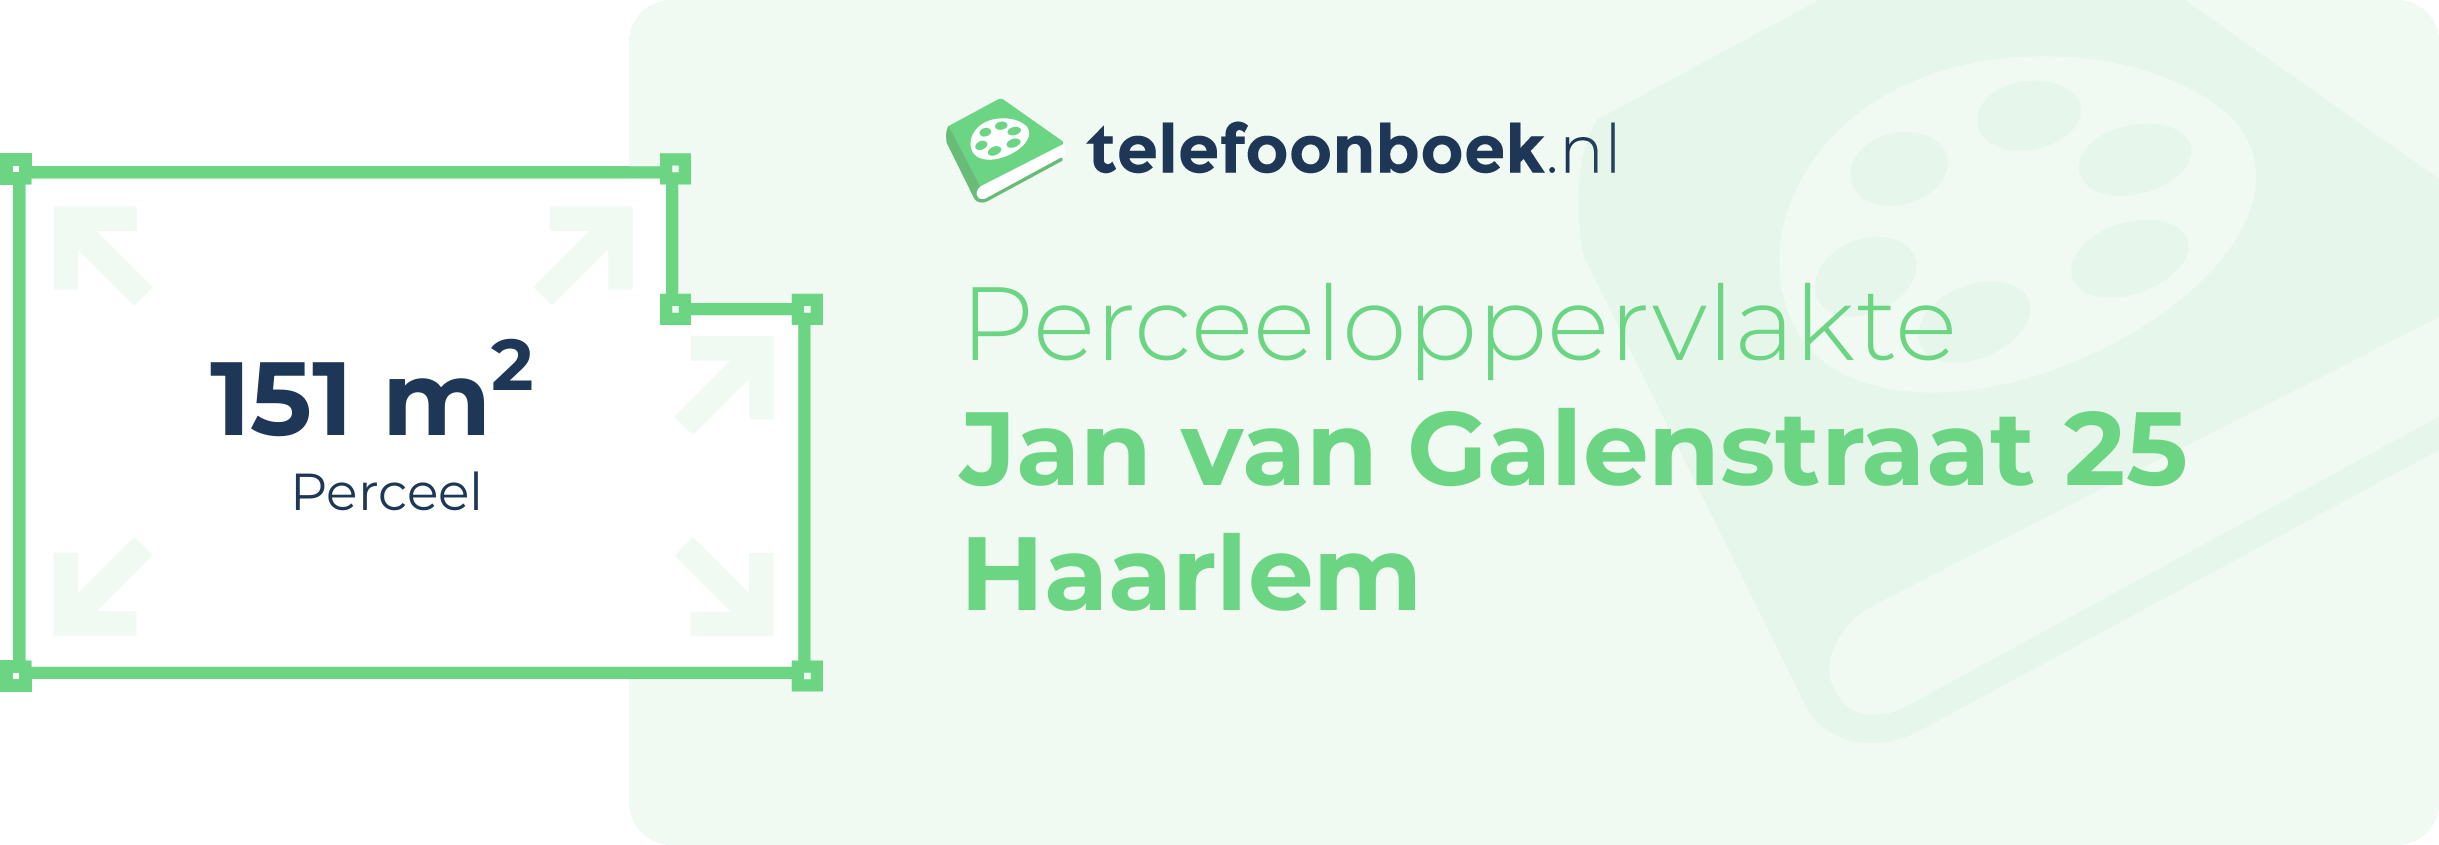 Perceeloppervlakte Jan Van Galenstraat 25 Haarlem